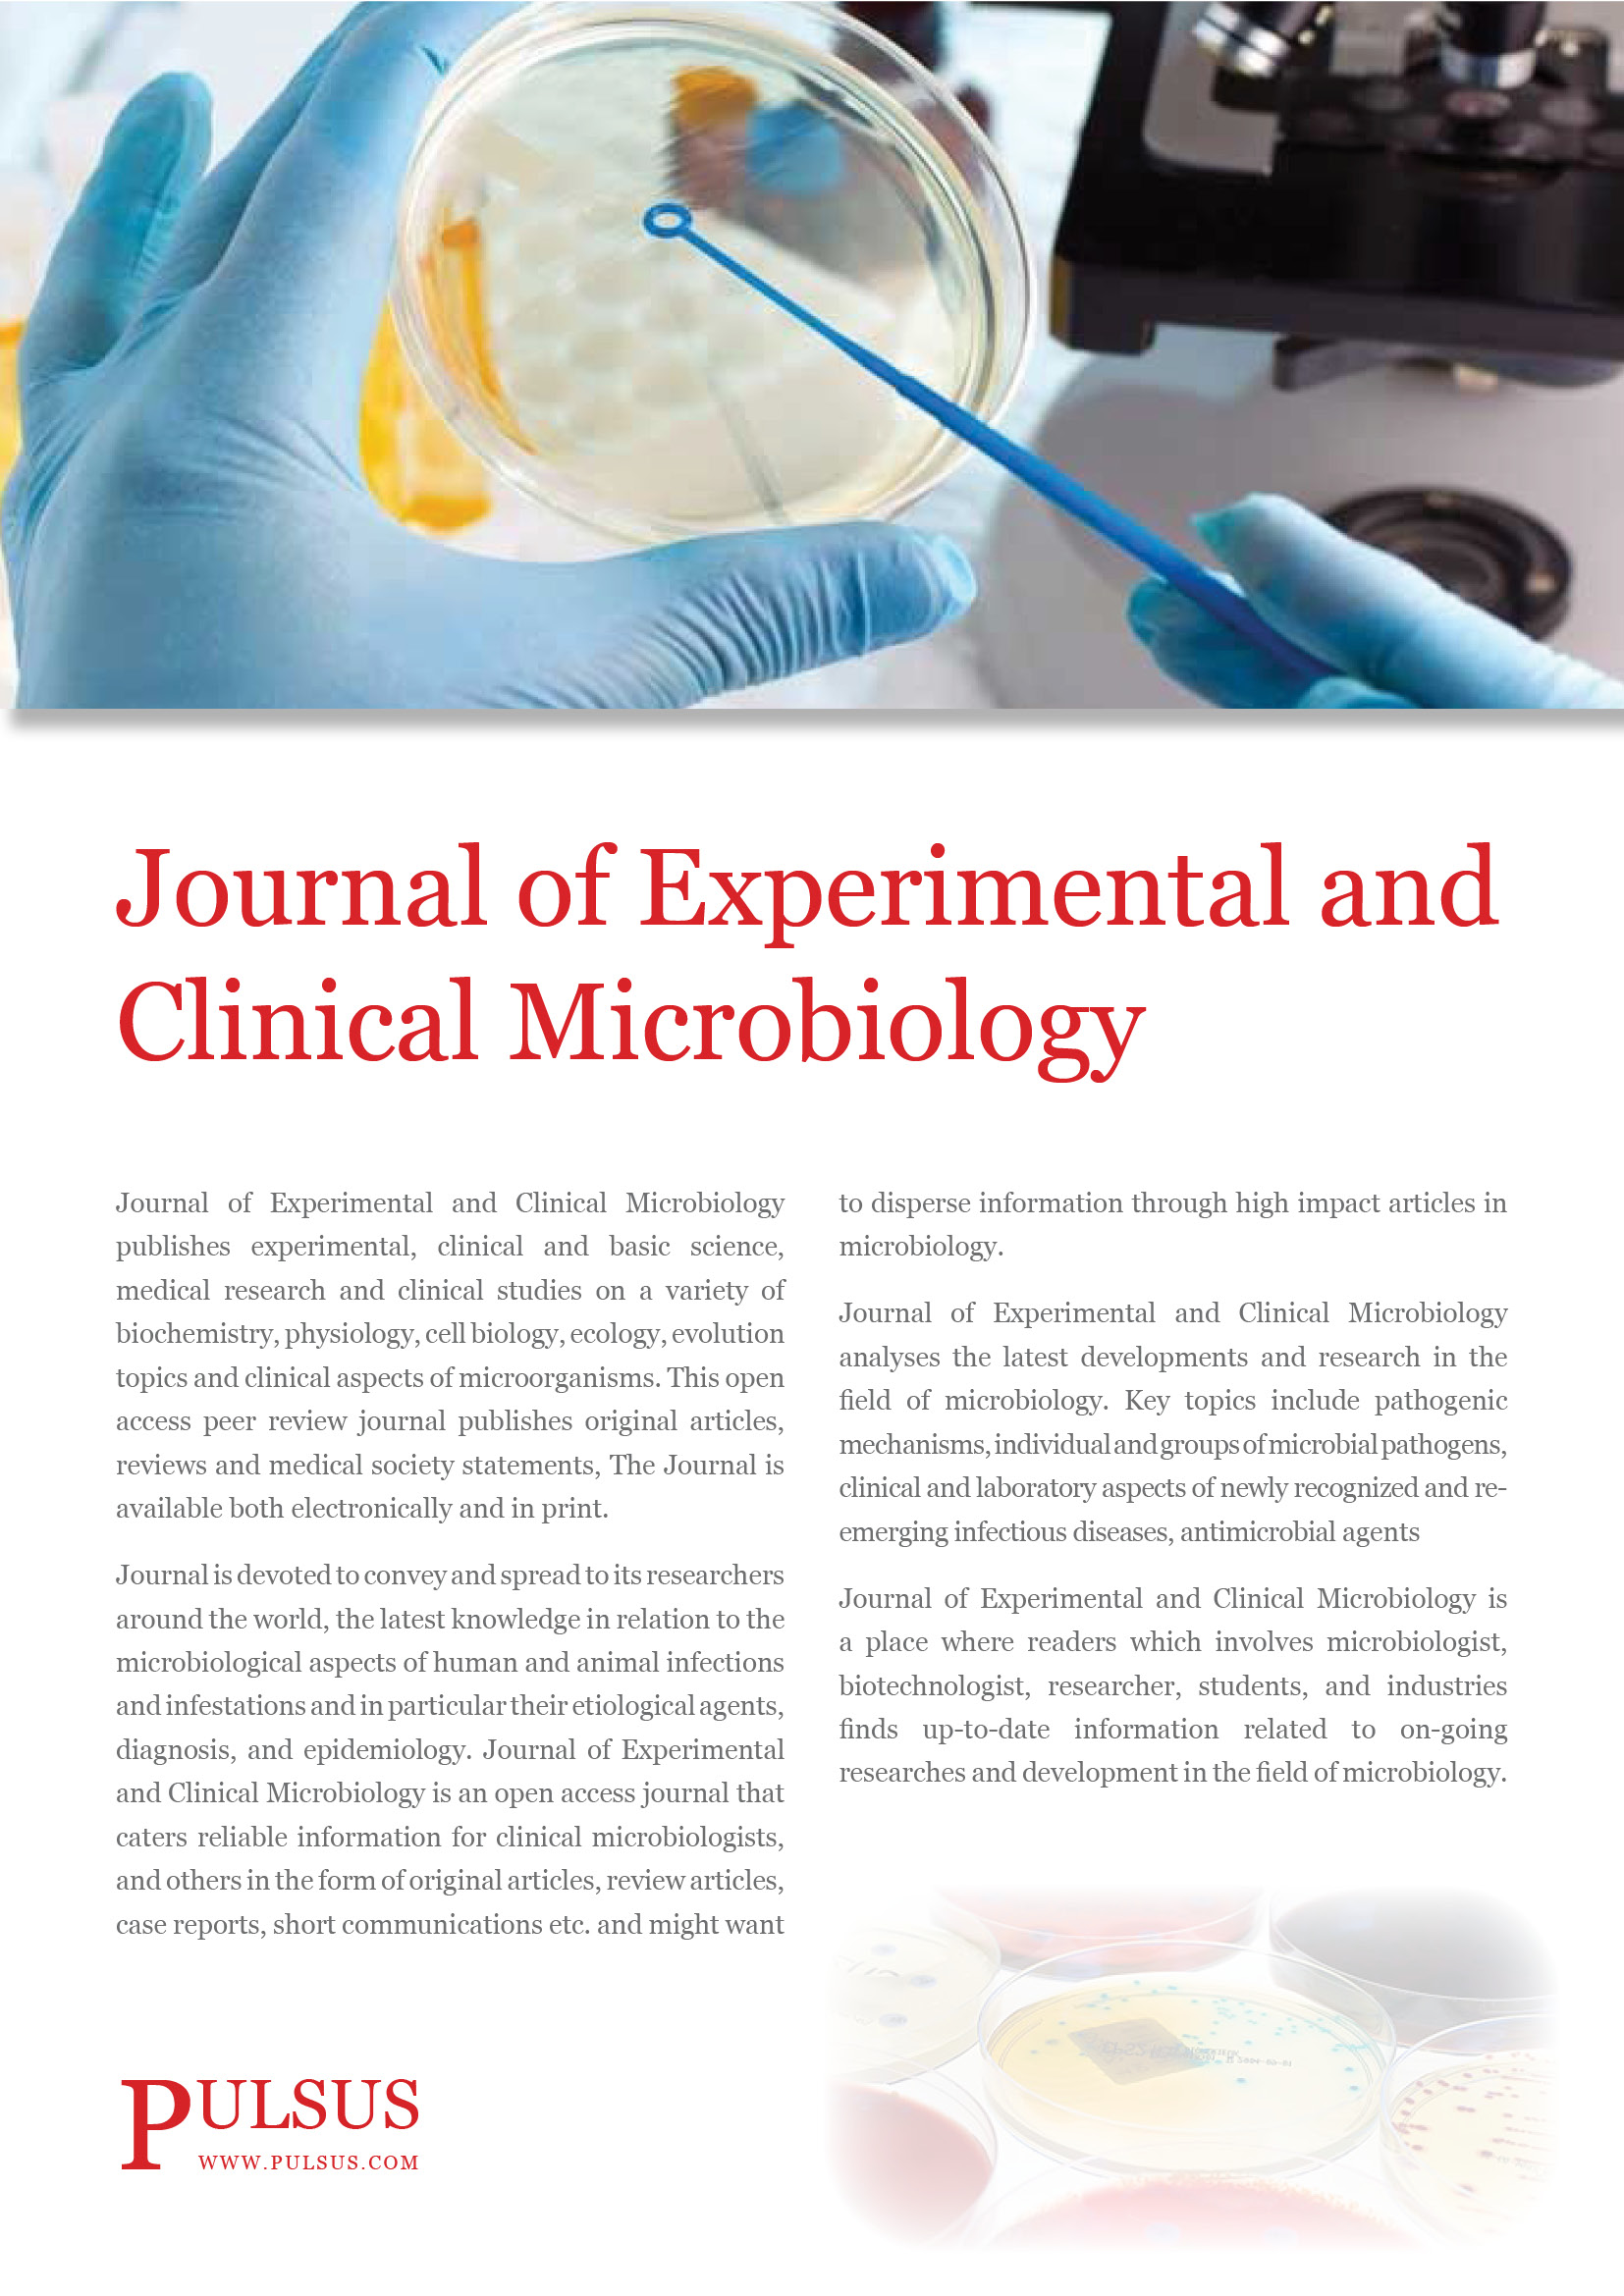 Revista de microbiología clínica y experimental